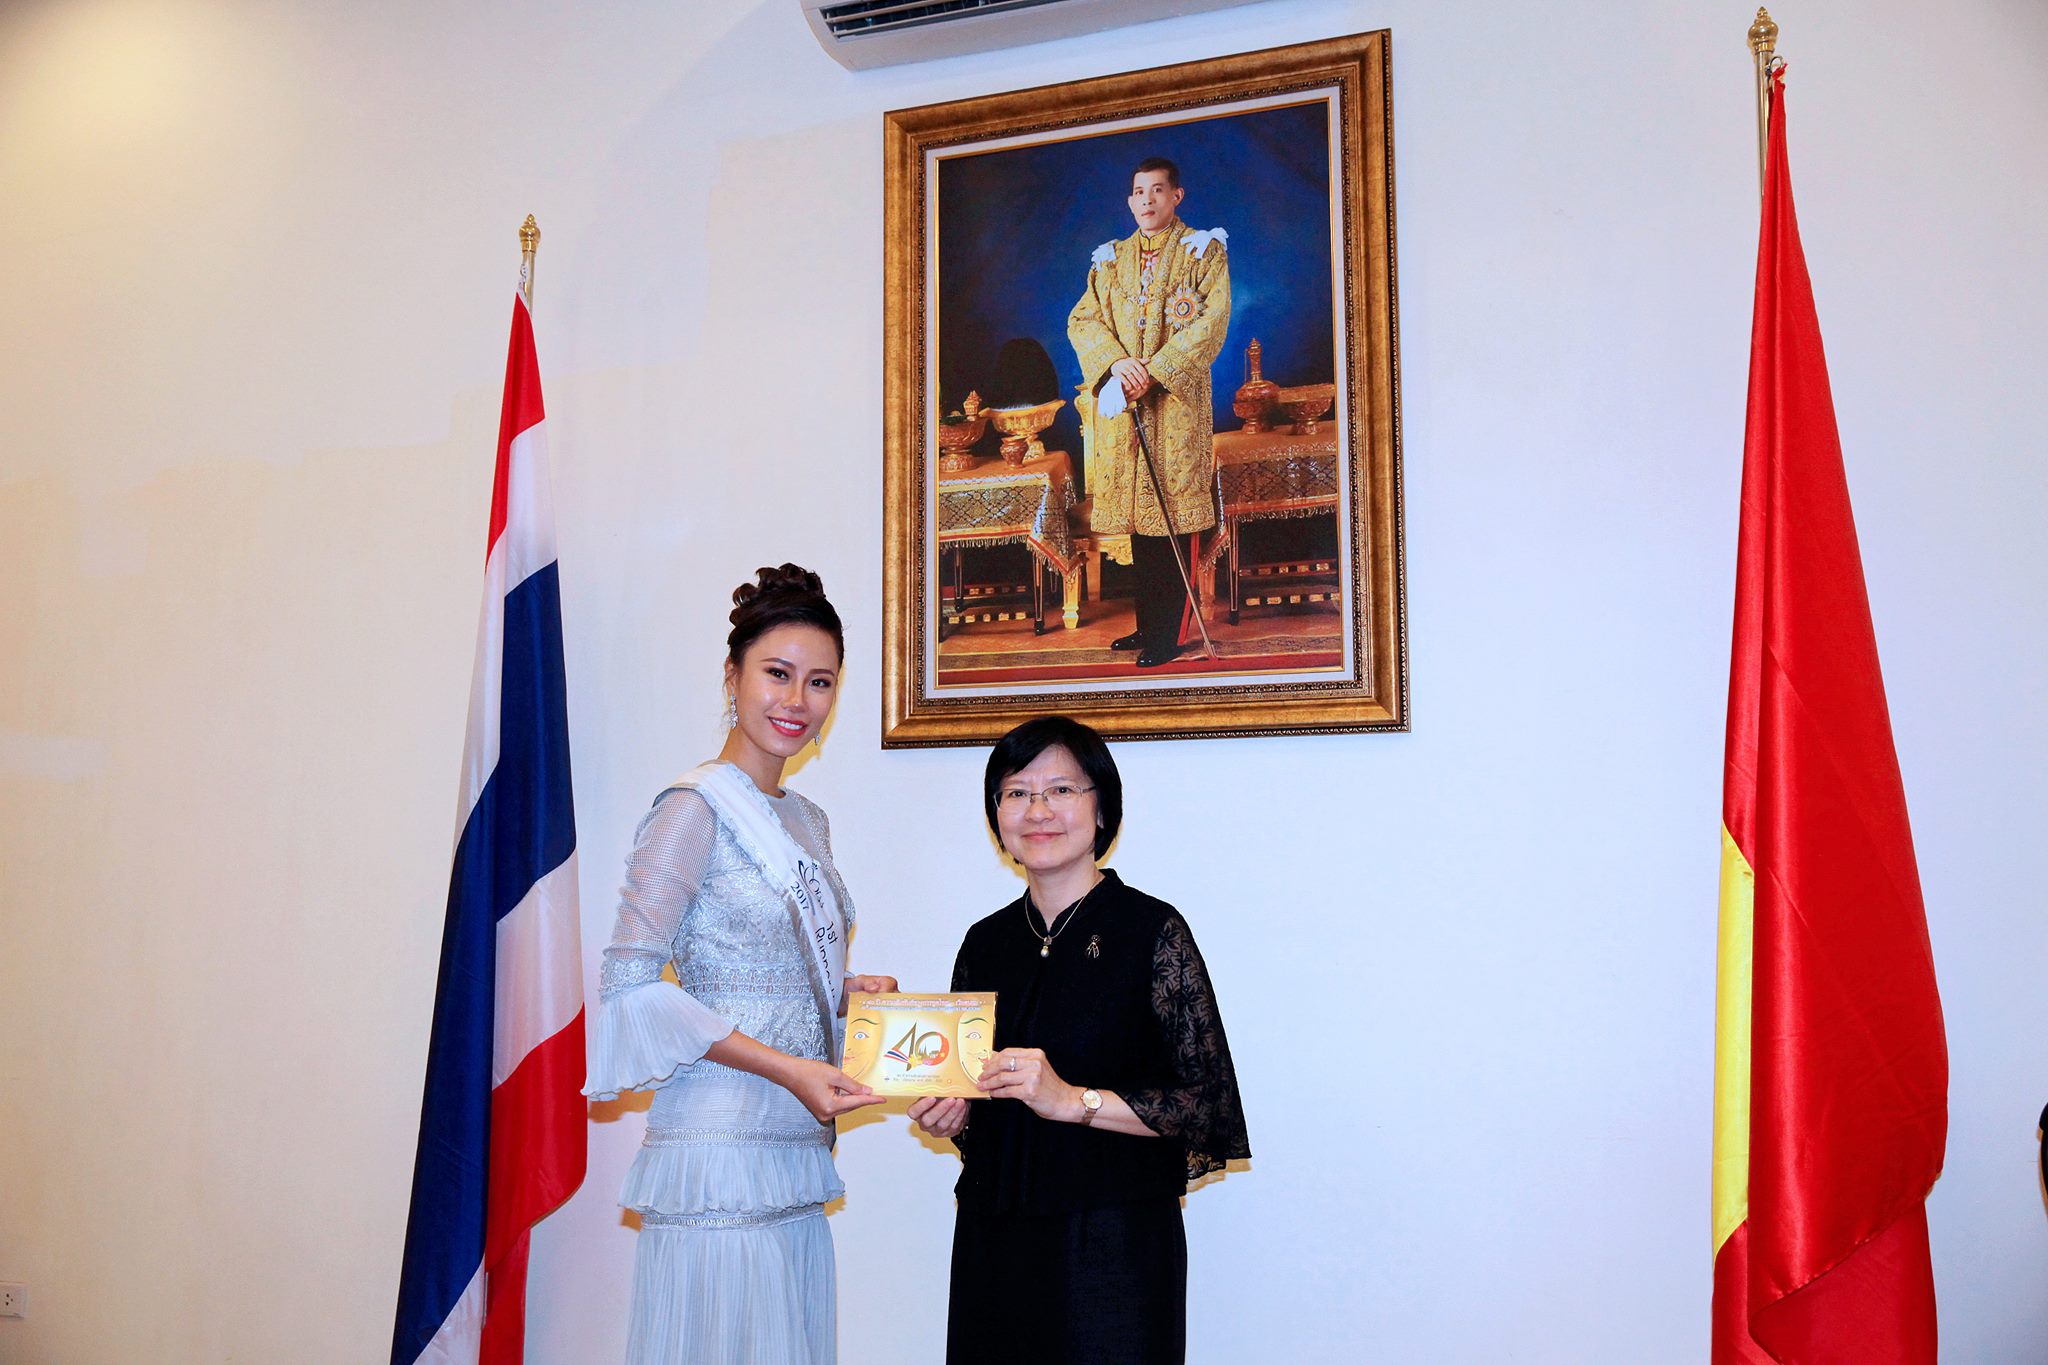  , Bà Wanthanee Viputwongsakul tặng quà lưu niệm cho Á hậu 2 Benedicta Heda Mercy Charis đến từ Indonesia